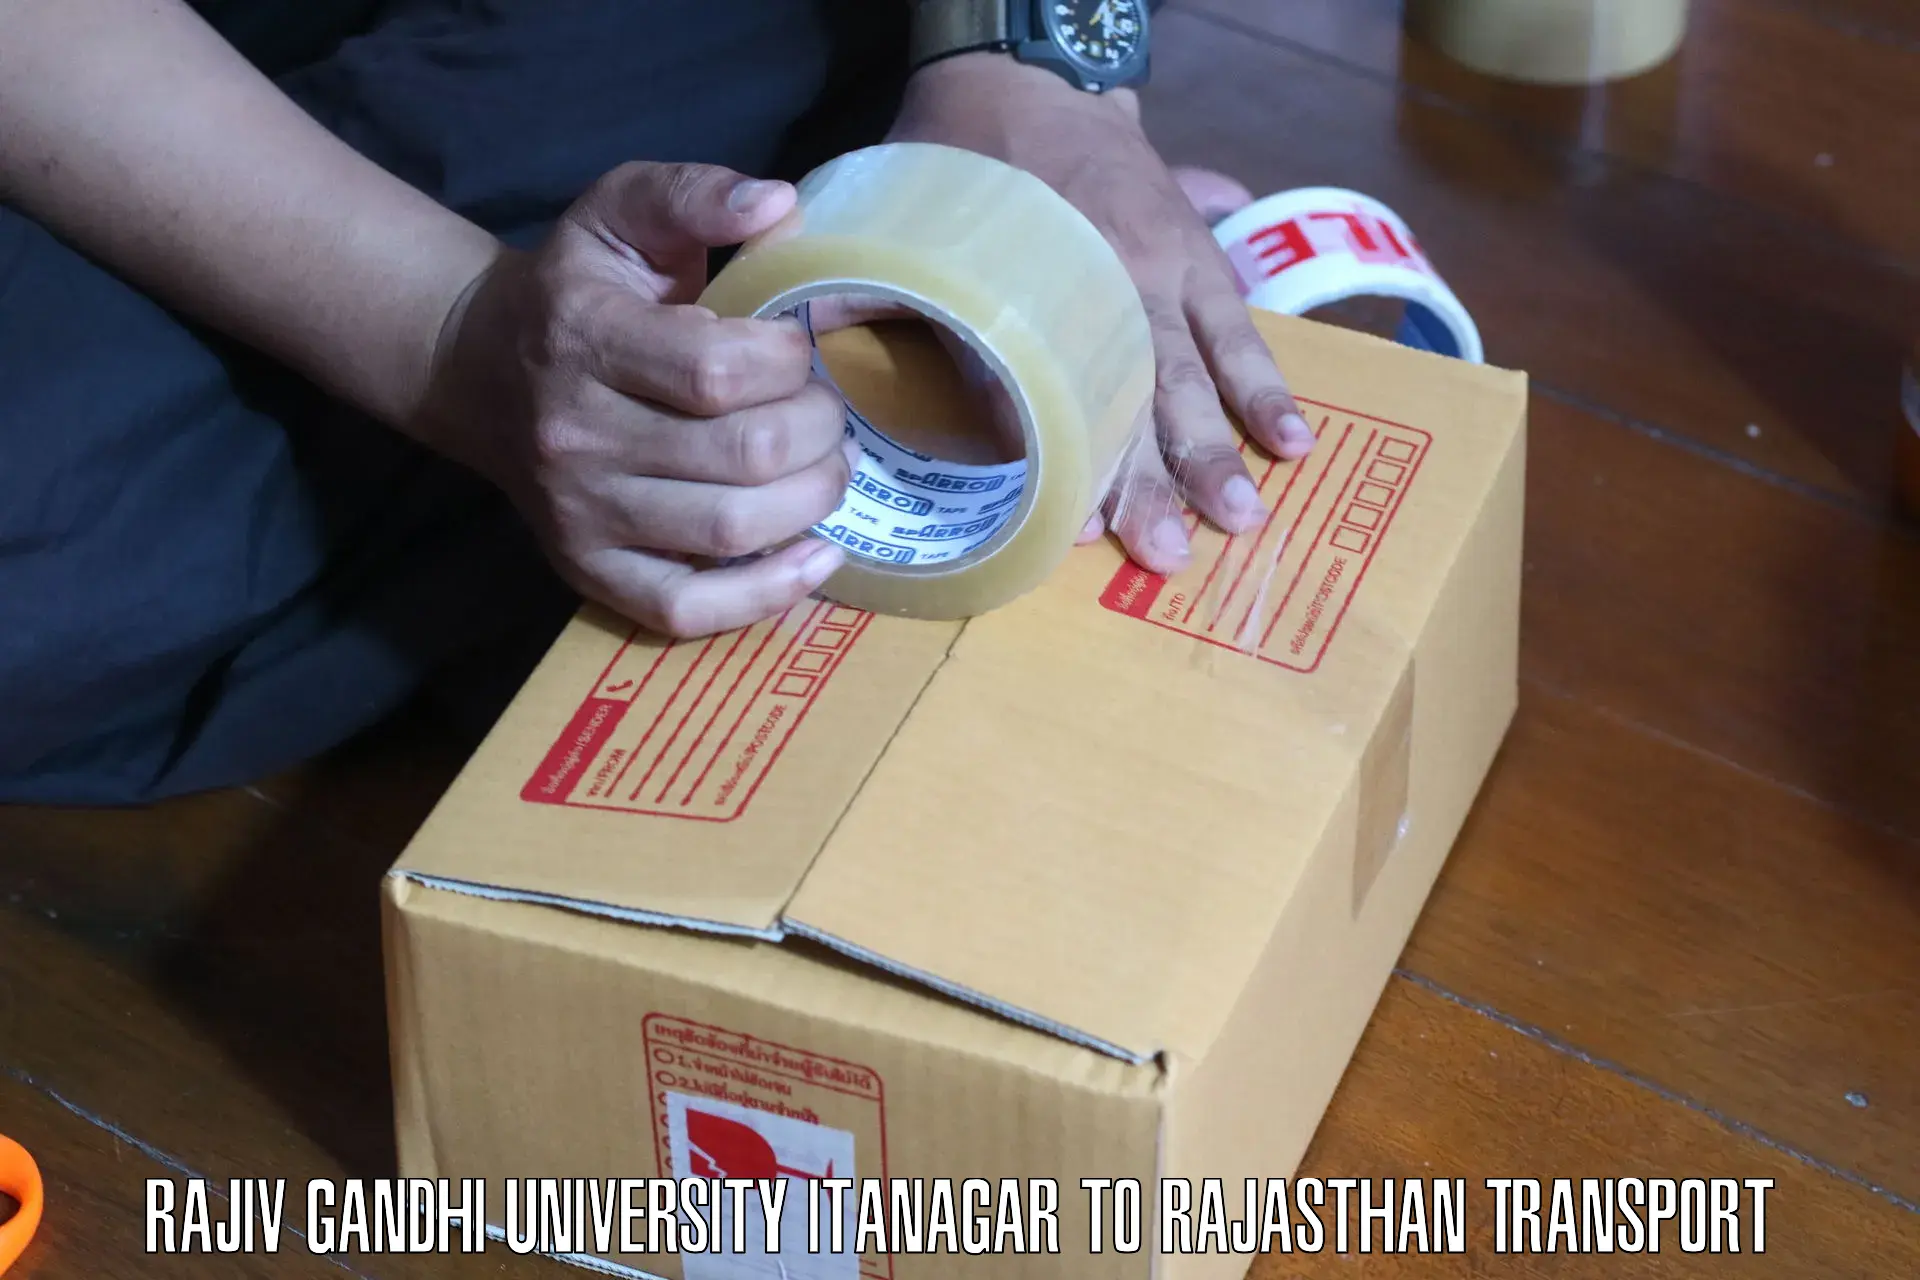 Transport shared services in Rajiv Gandhi University Itanagar to Kaman